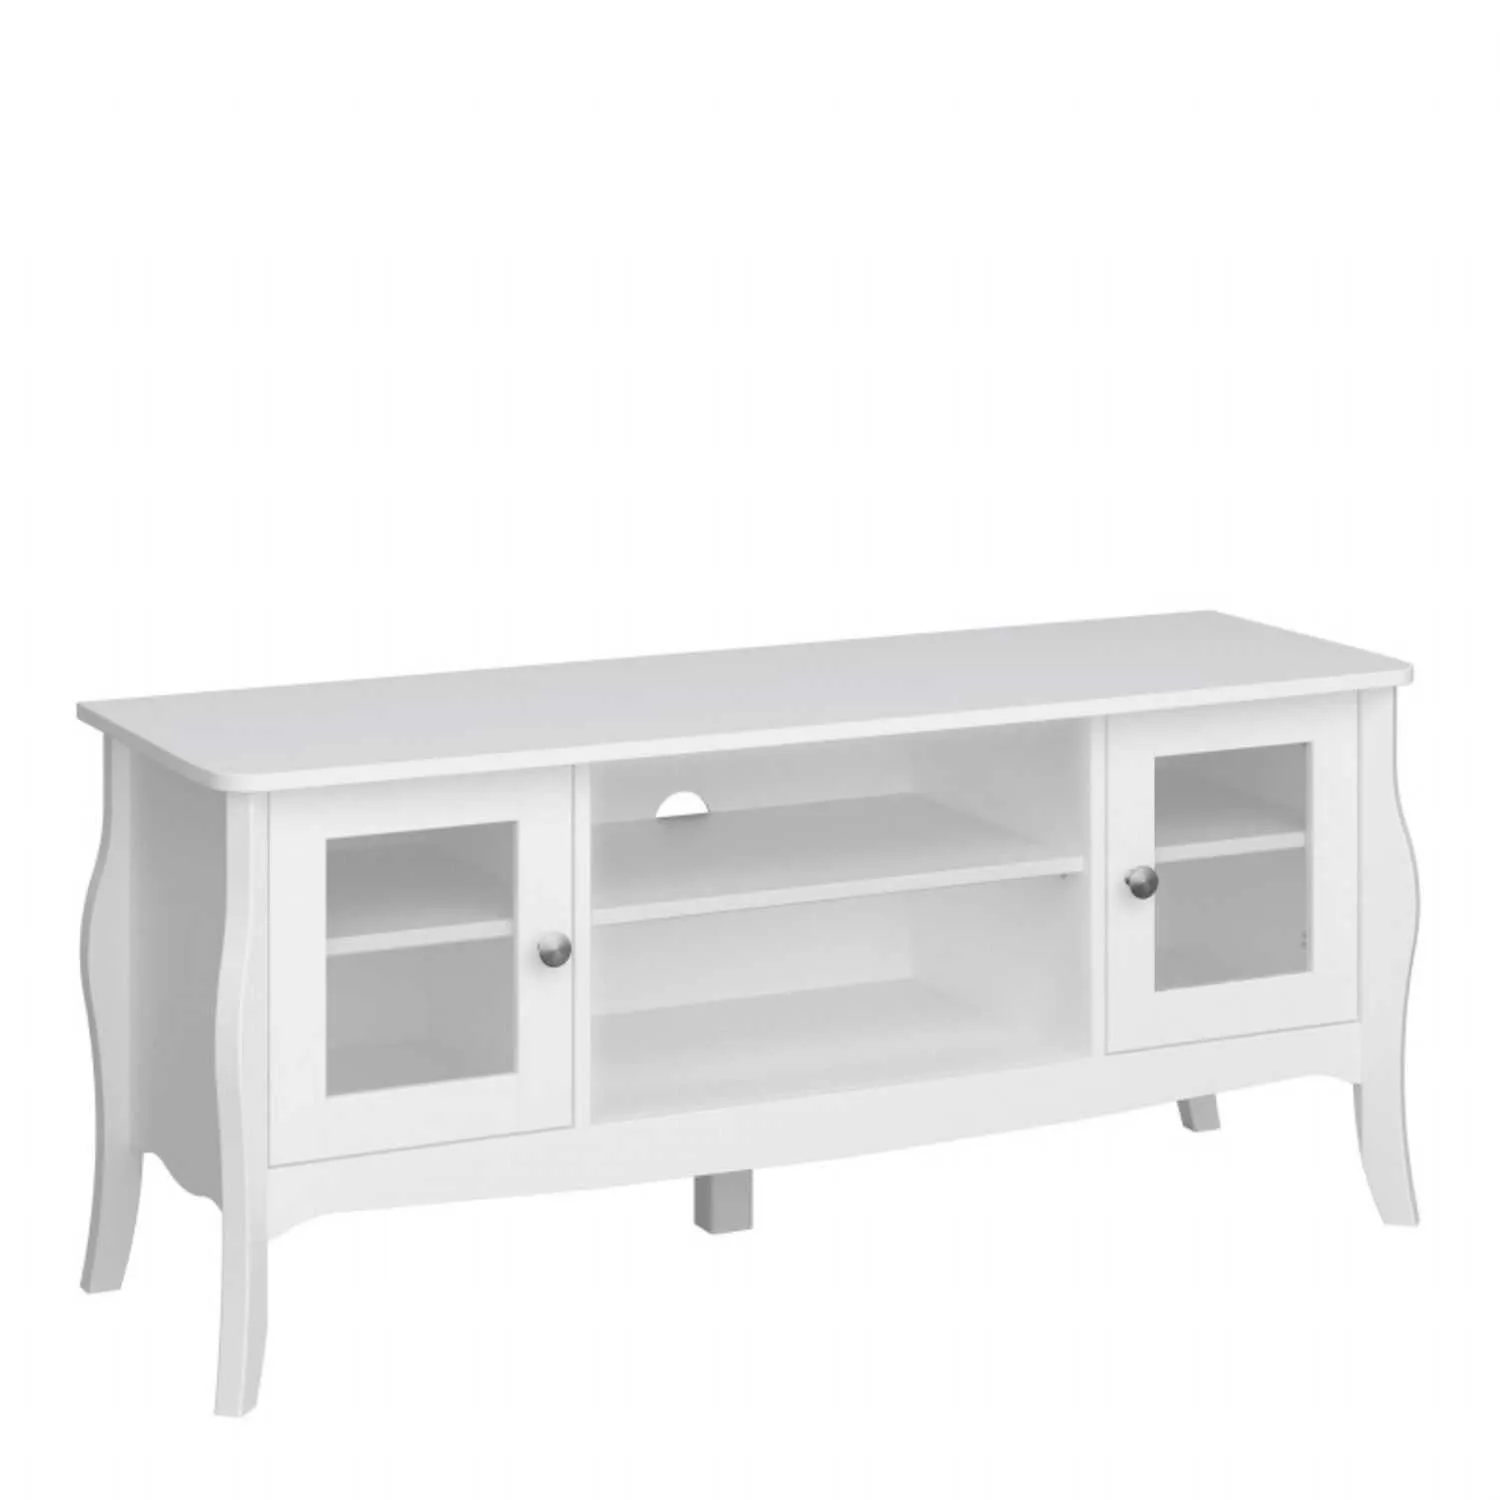 TV Table (Narrow) 2 Dr 2 Shelves White